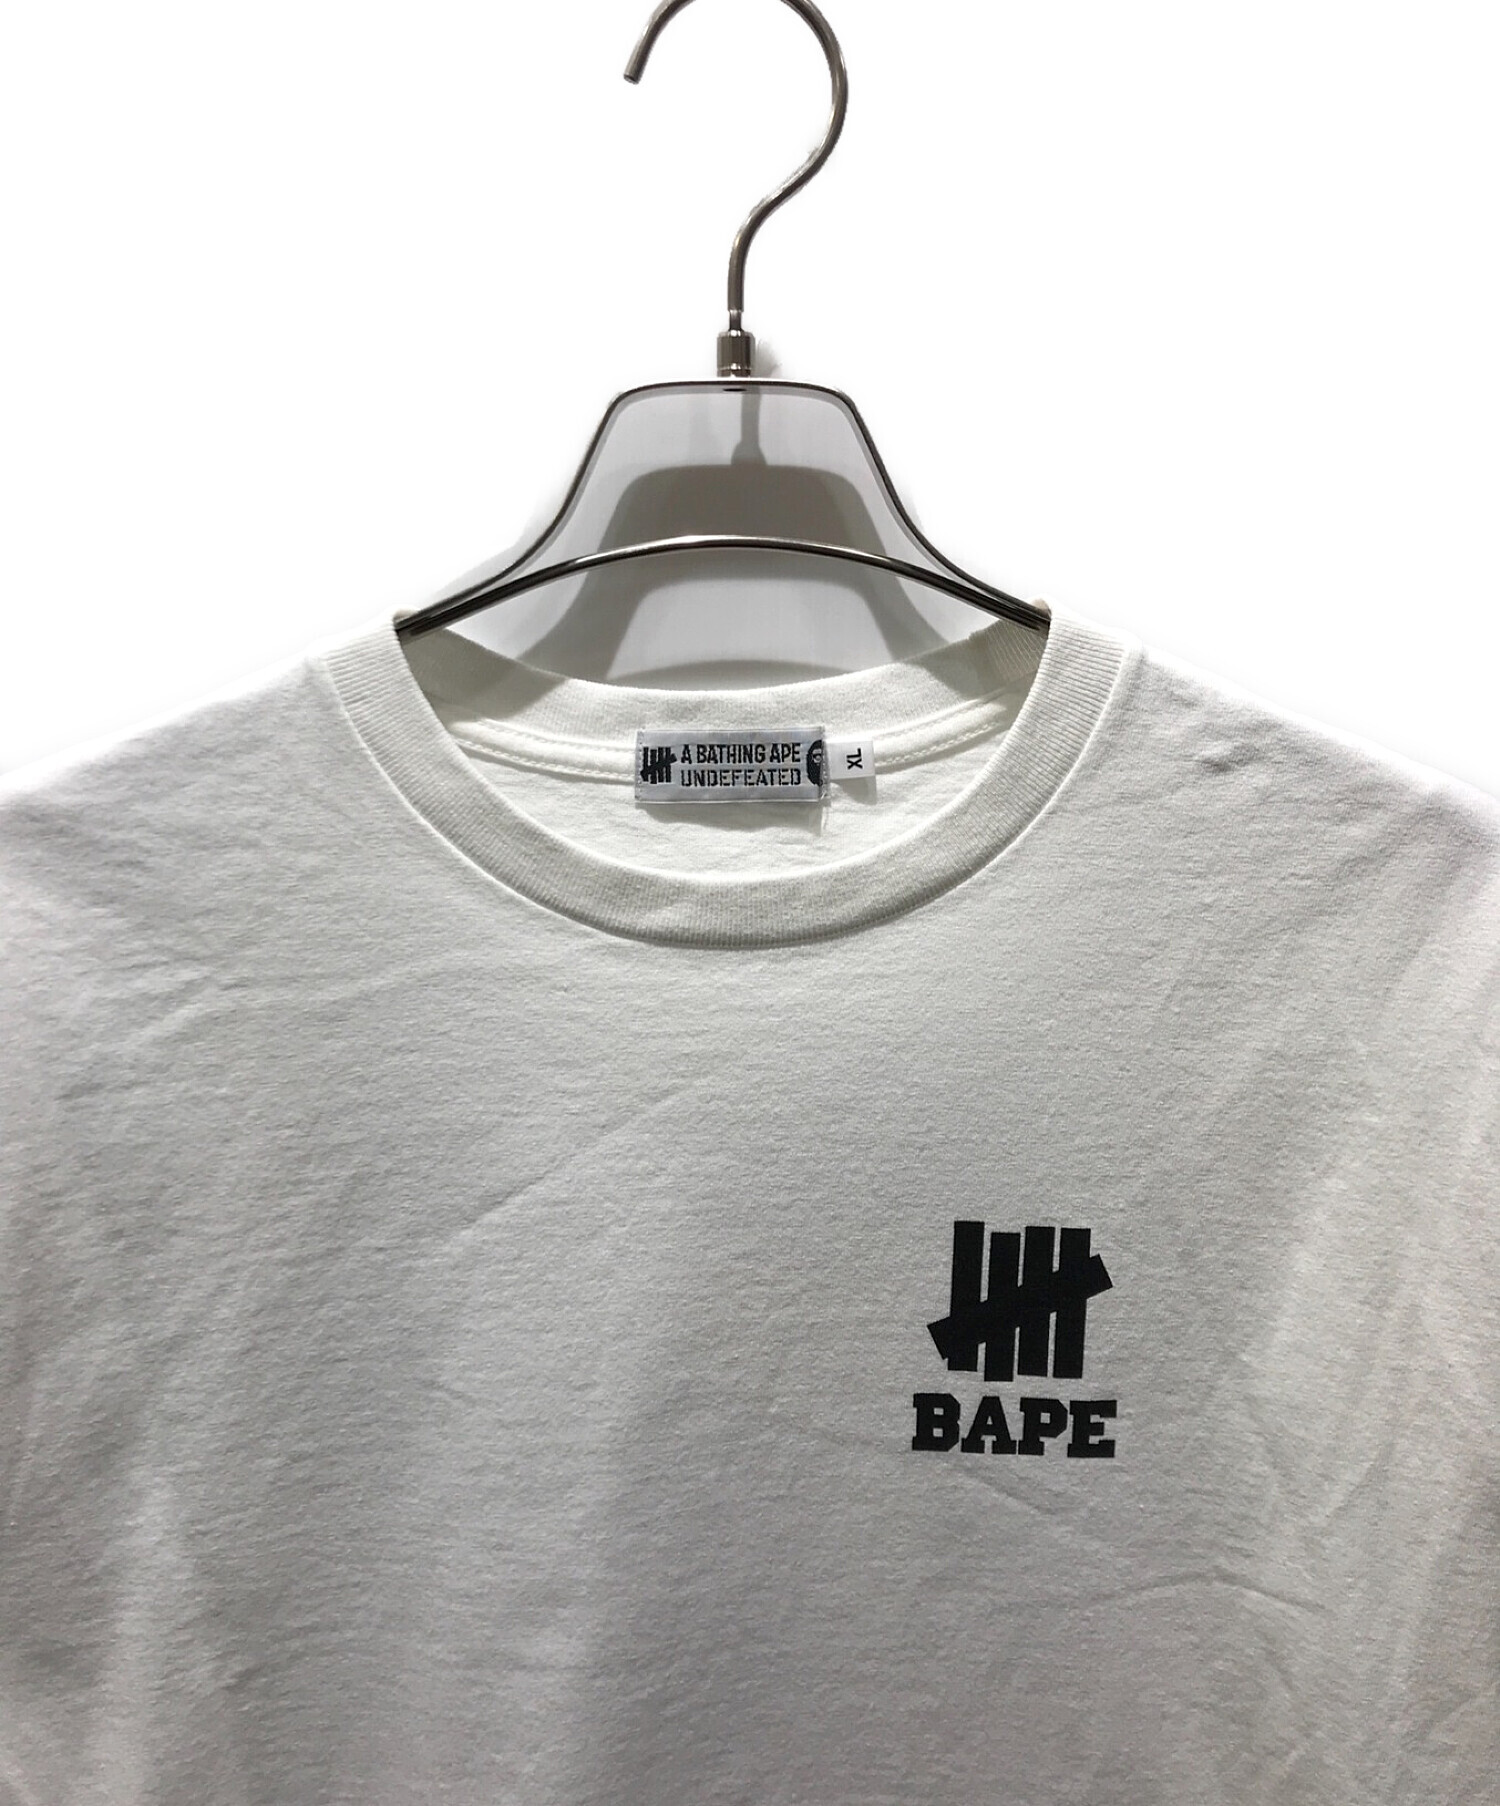 A BATHING APE (アベイシングエイプ) UNDEFEATED (アンディフィーテッド) プリントTシャツ ホワイト サイズ:XL